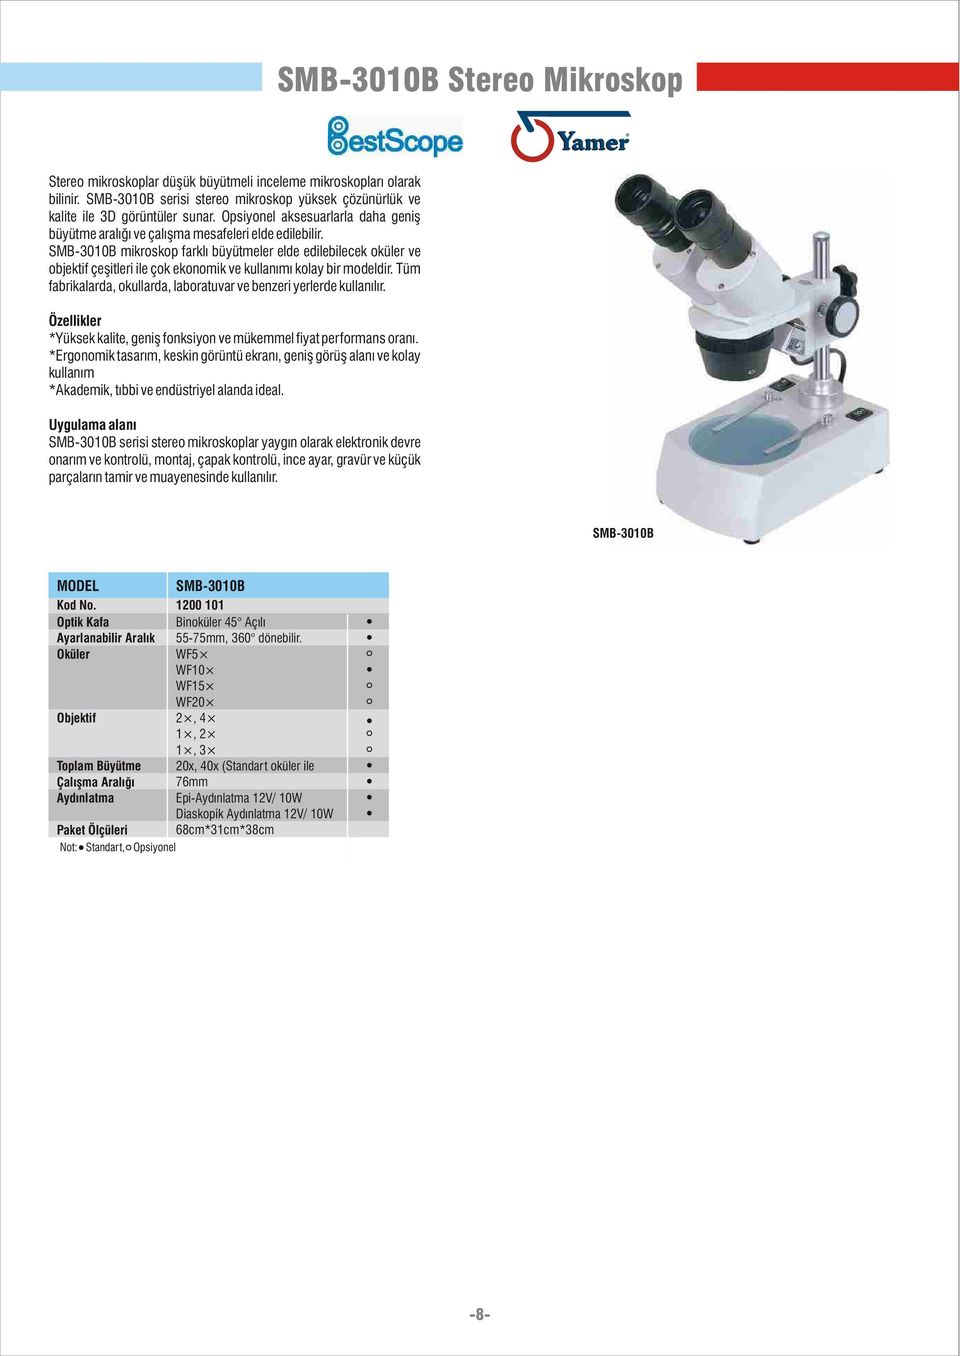 SMB-3010B mikroskop farklý büyütmeler elde edilebilecek oküler ve objektif çeþitleri ile çok ekonomik ve kullanýmý kolay bir modeldir.